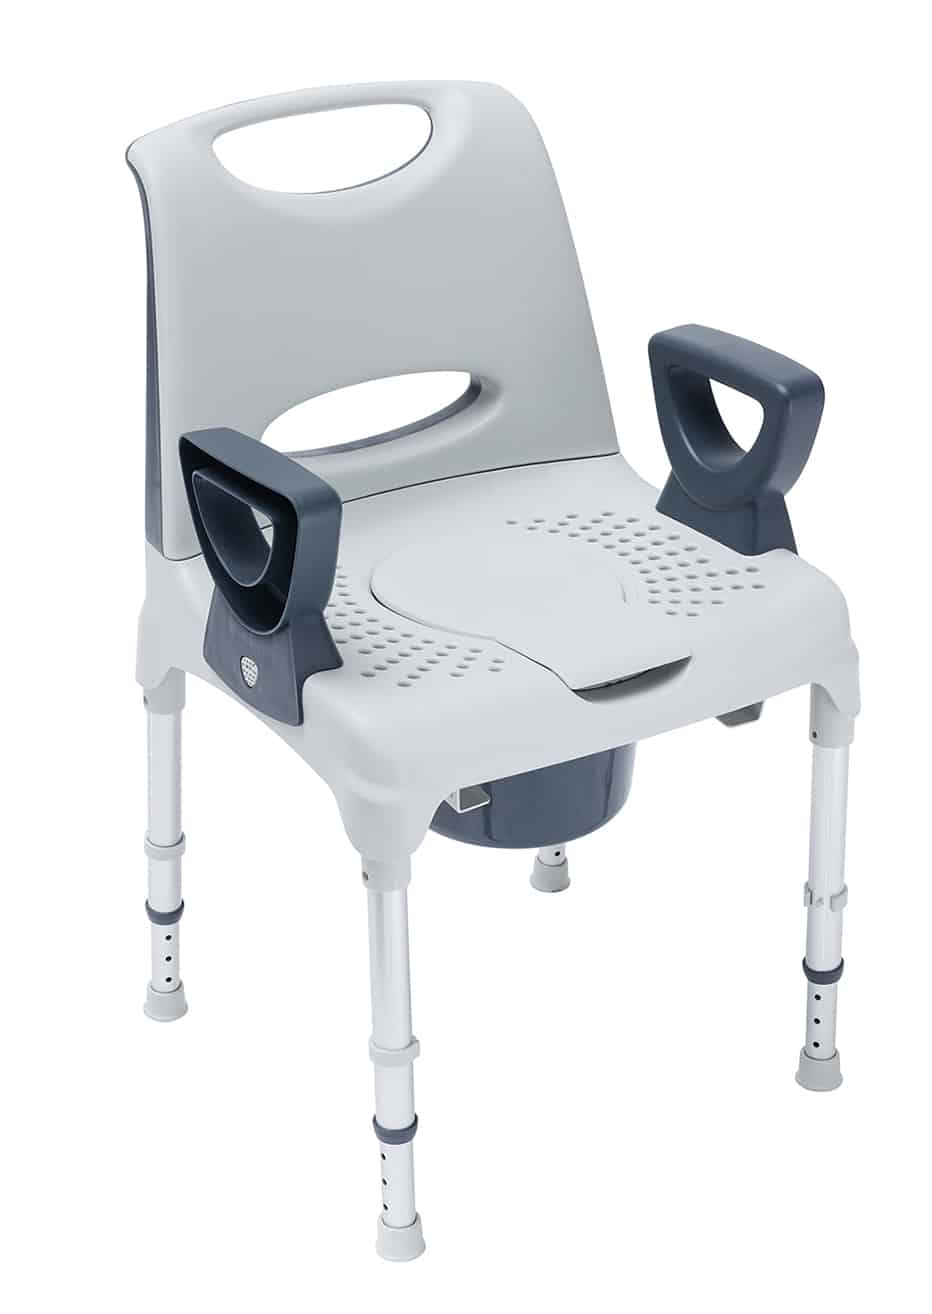 Chaise toilette - chaise de toilette - vente de chaises de